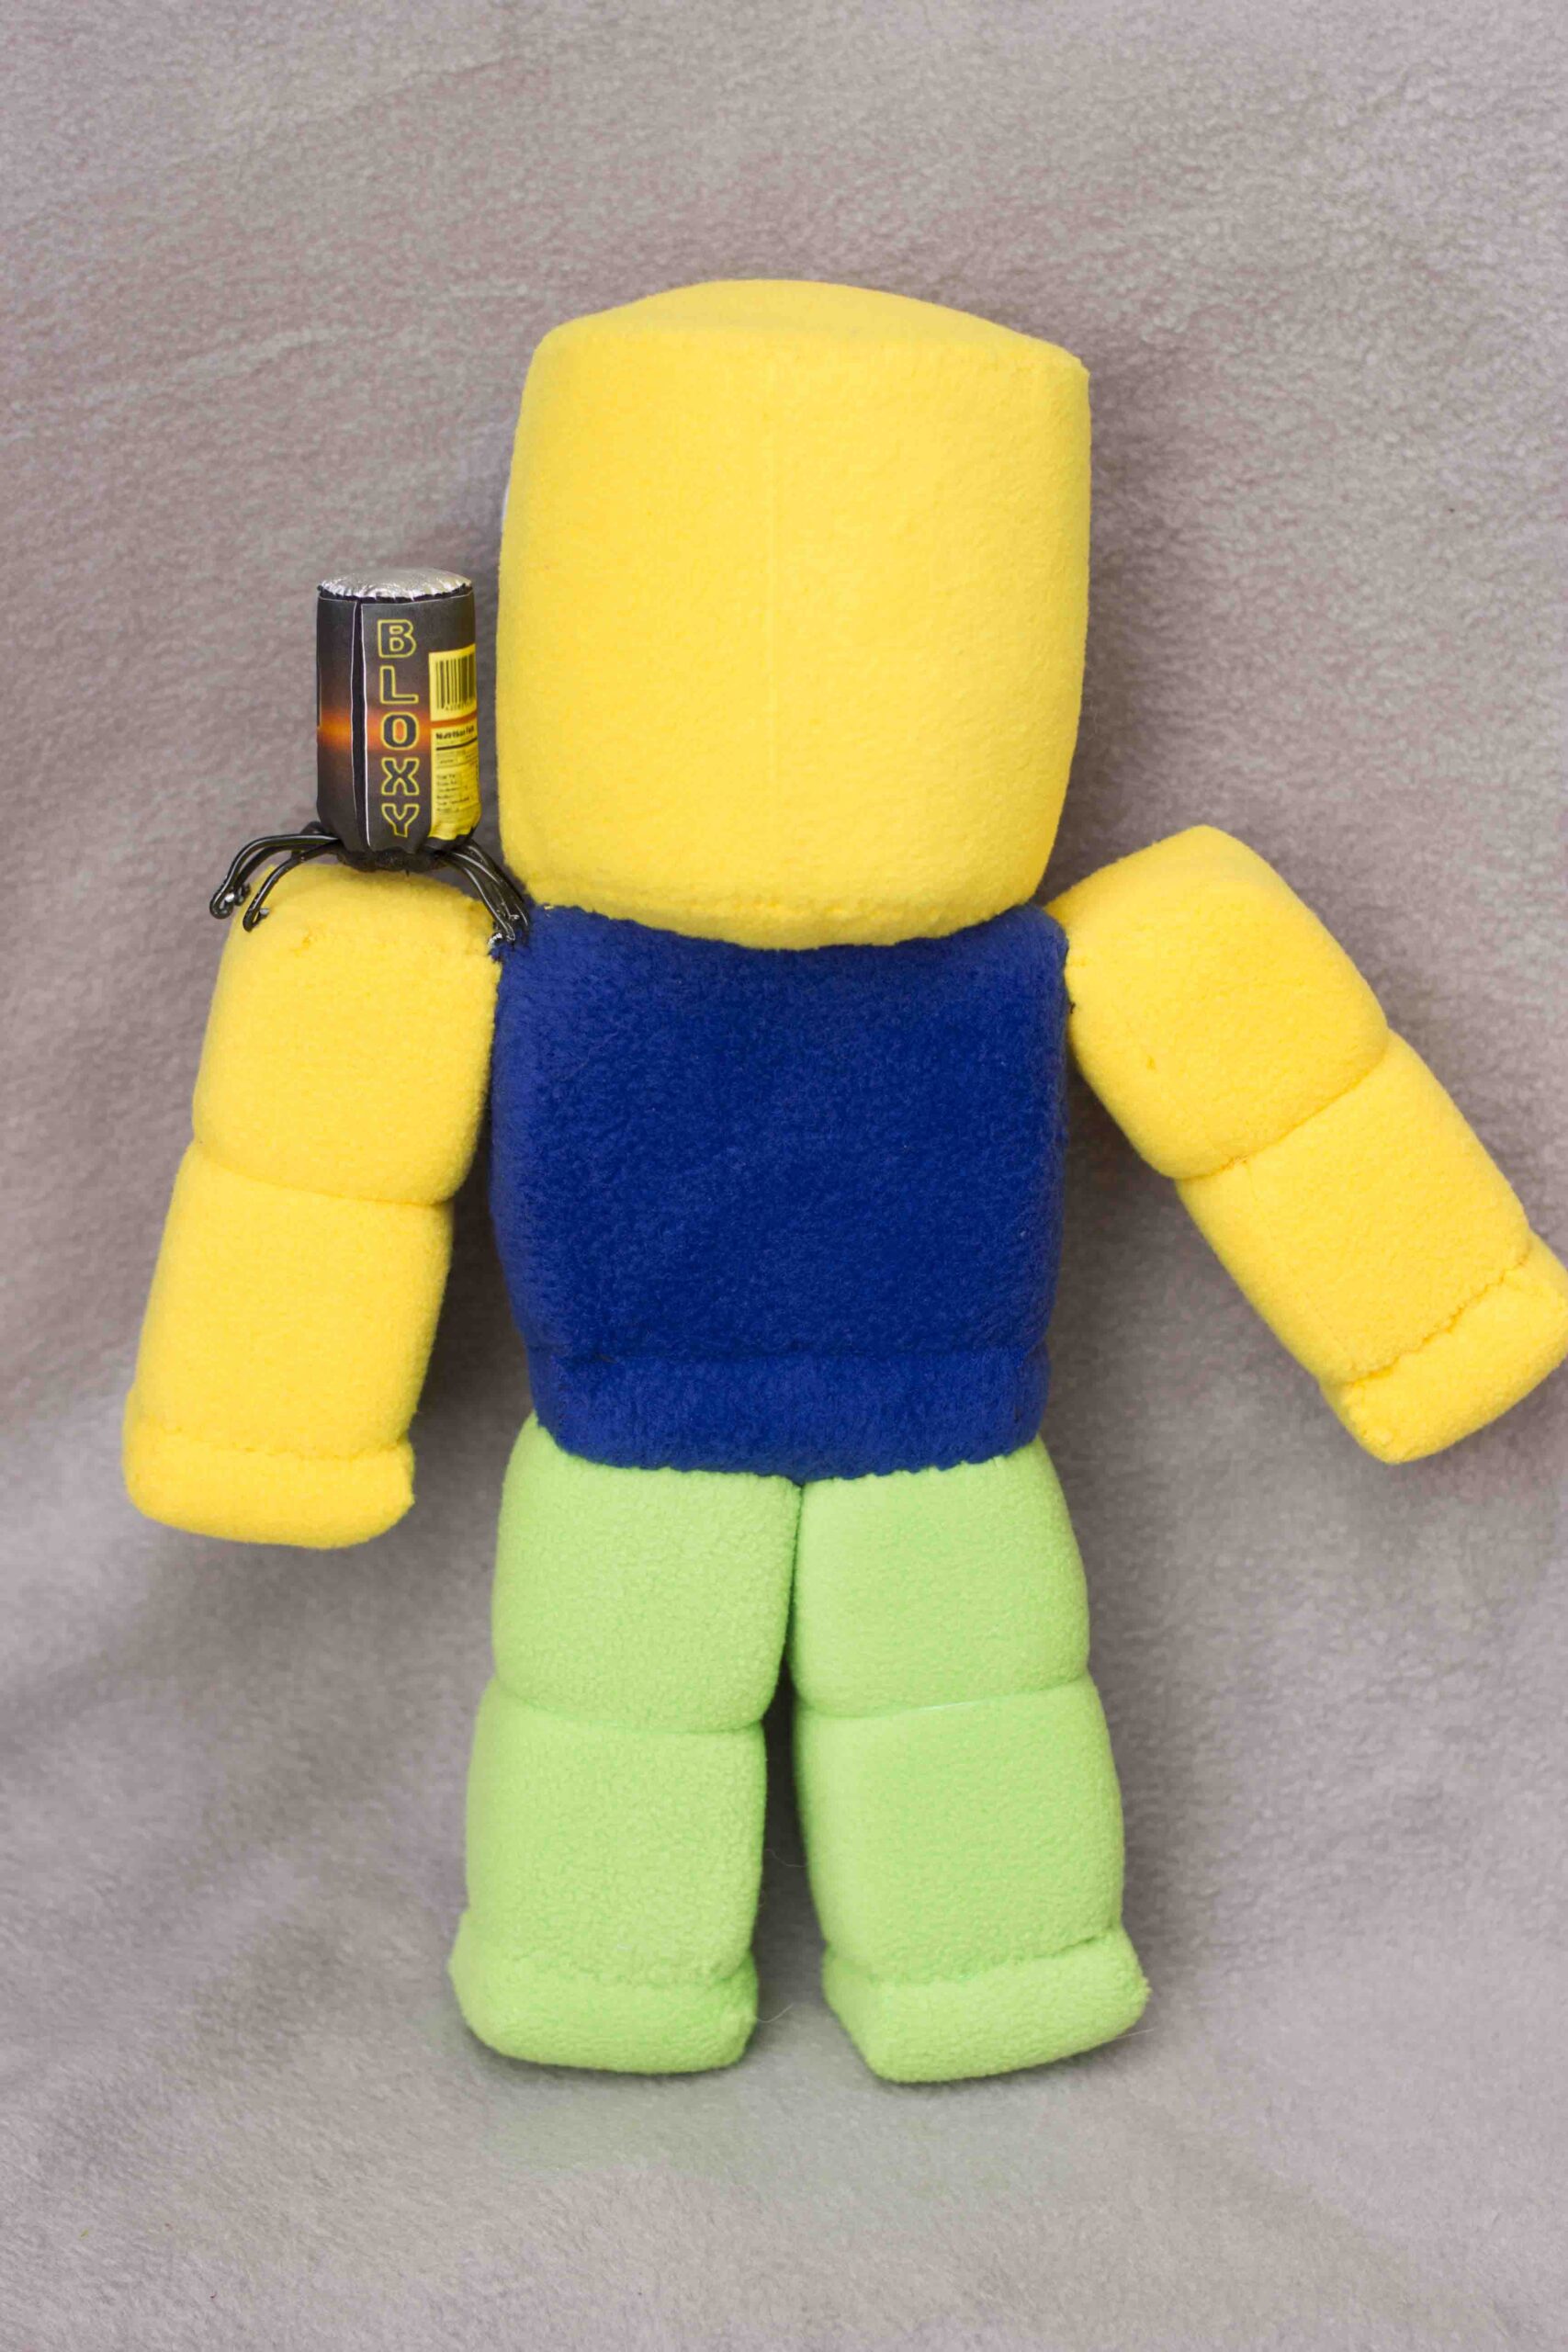 Avatar Roblox plush toy - DailyDoll Shop